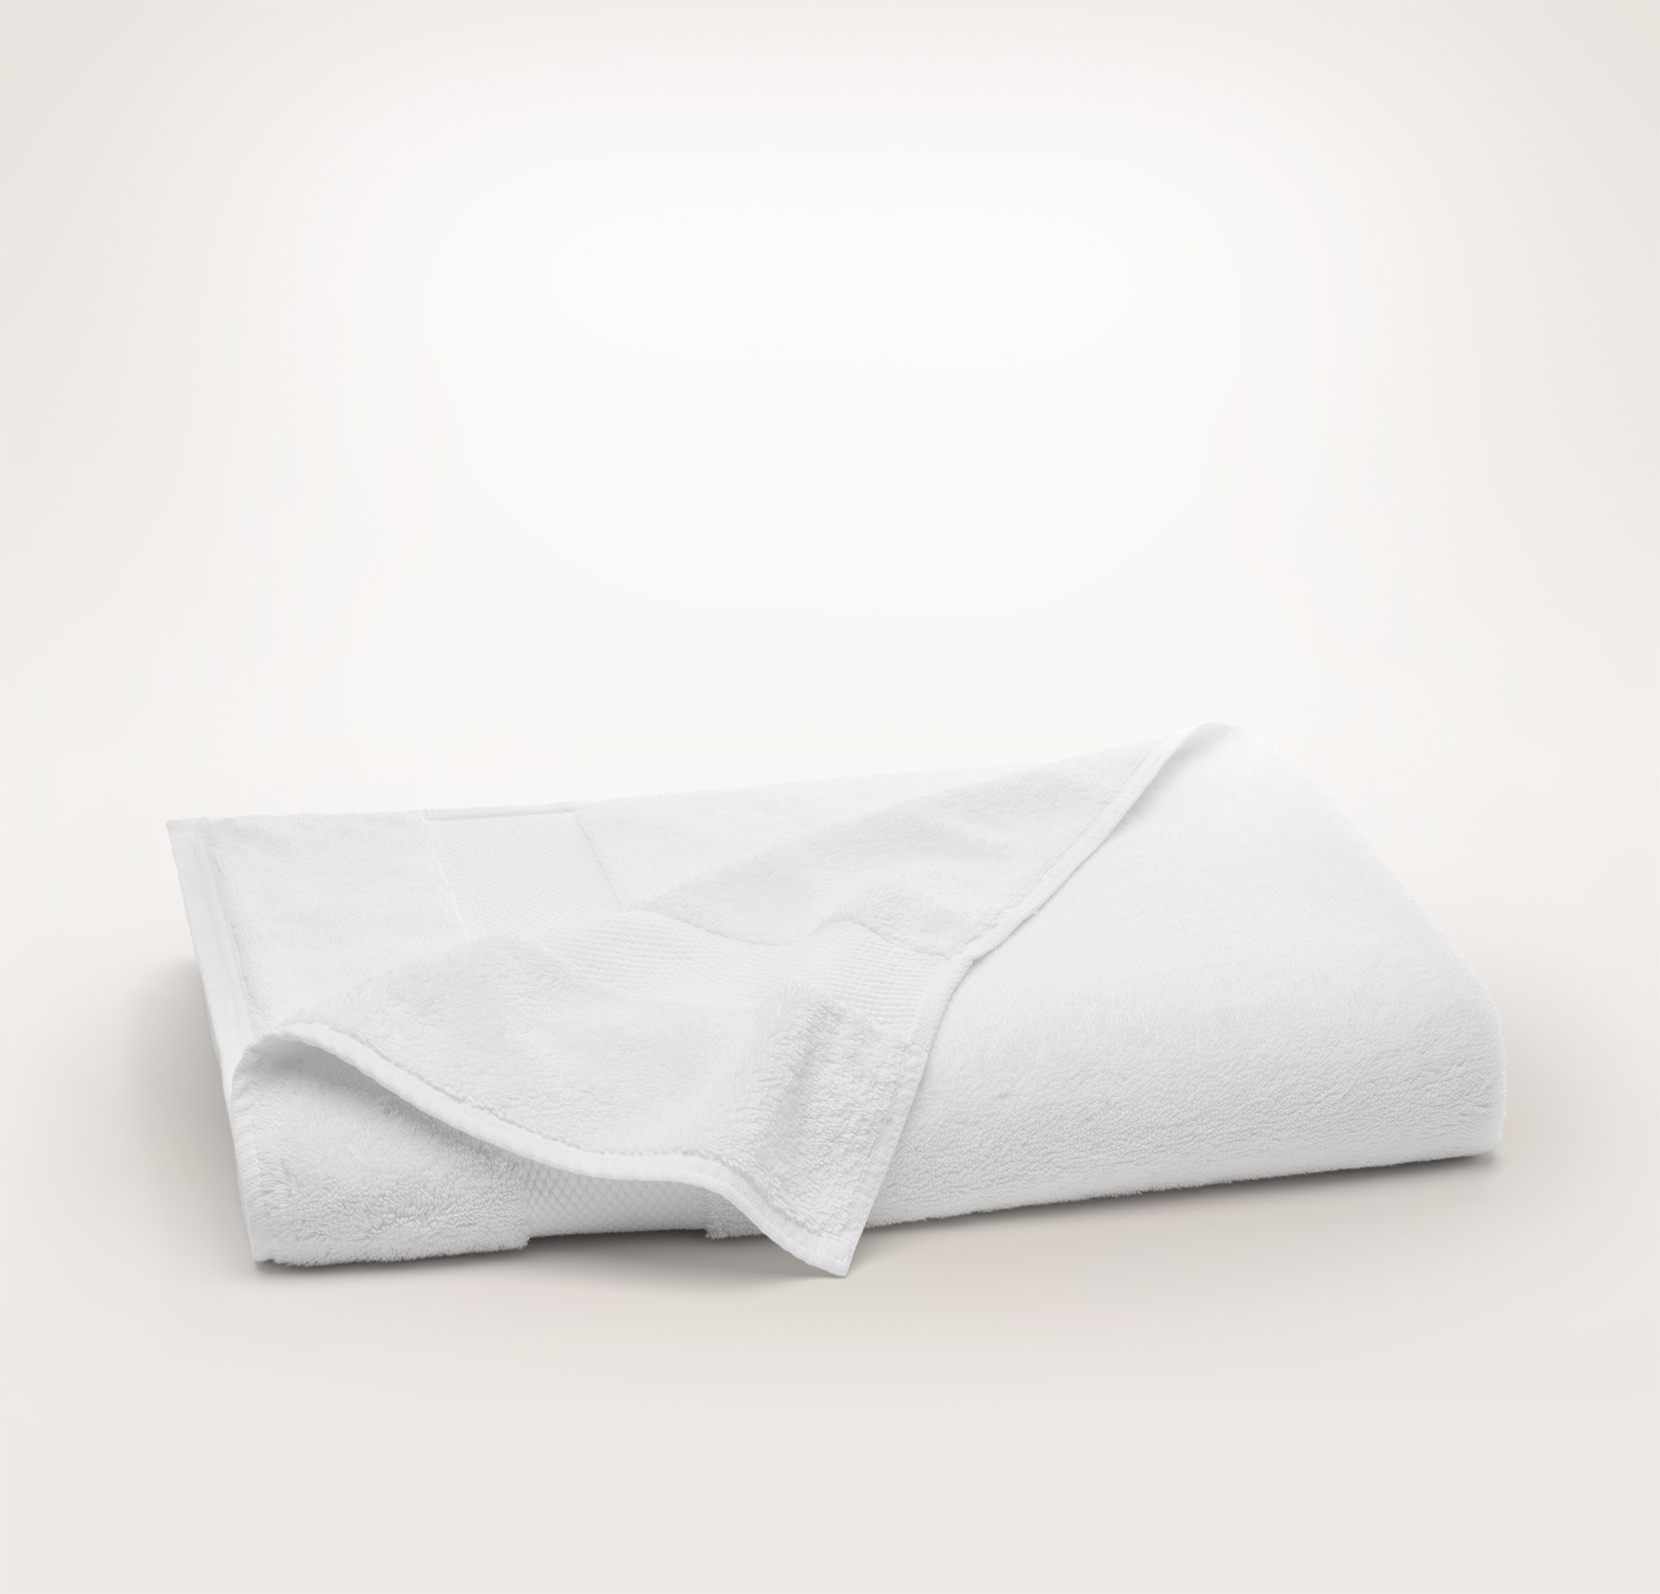 100% Cotton Extra Large Oversized Bath Towel White Bath Sheet